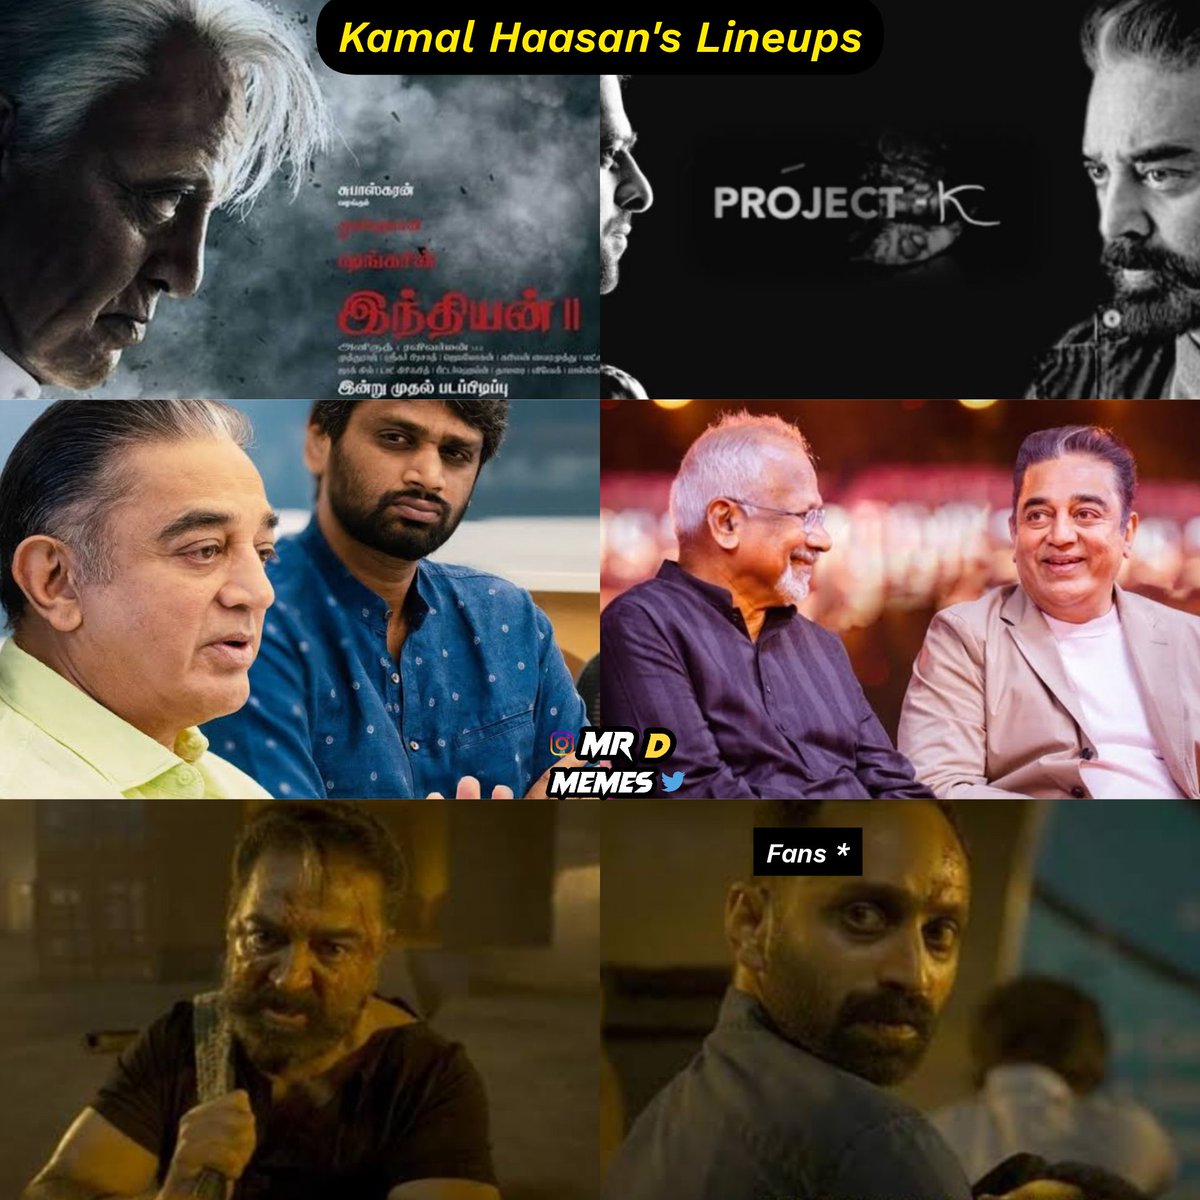 Aandavar 💥🛐

#KamalHaasan #Indian2 #ProjectK #Kollywood #HVinoth #Maniratnam #Vikram #VettaiyaduVilaiyadu